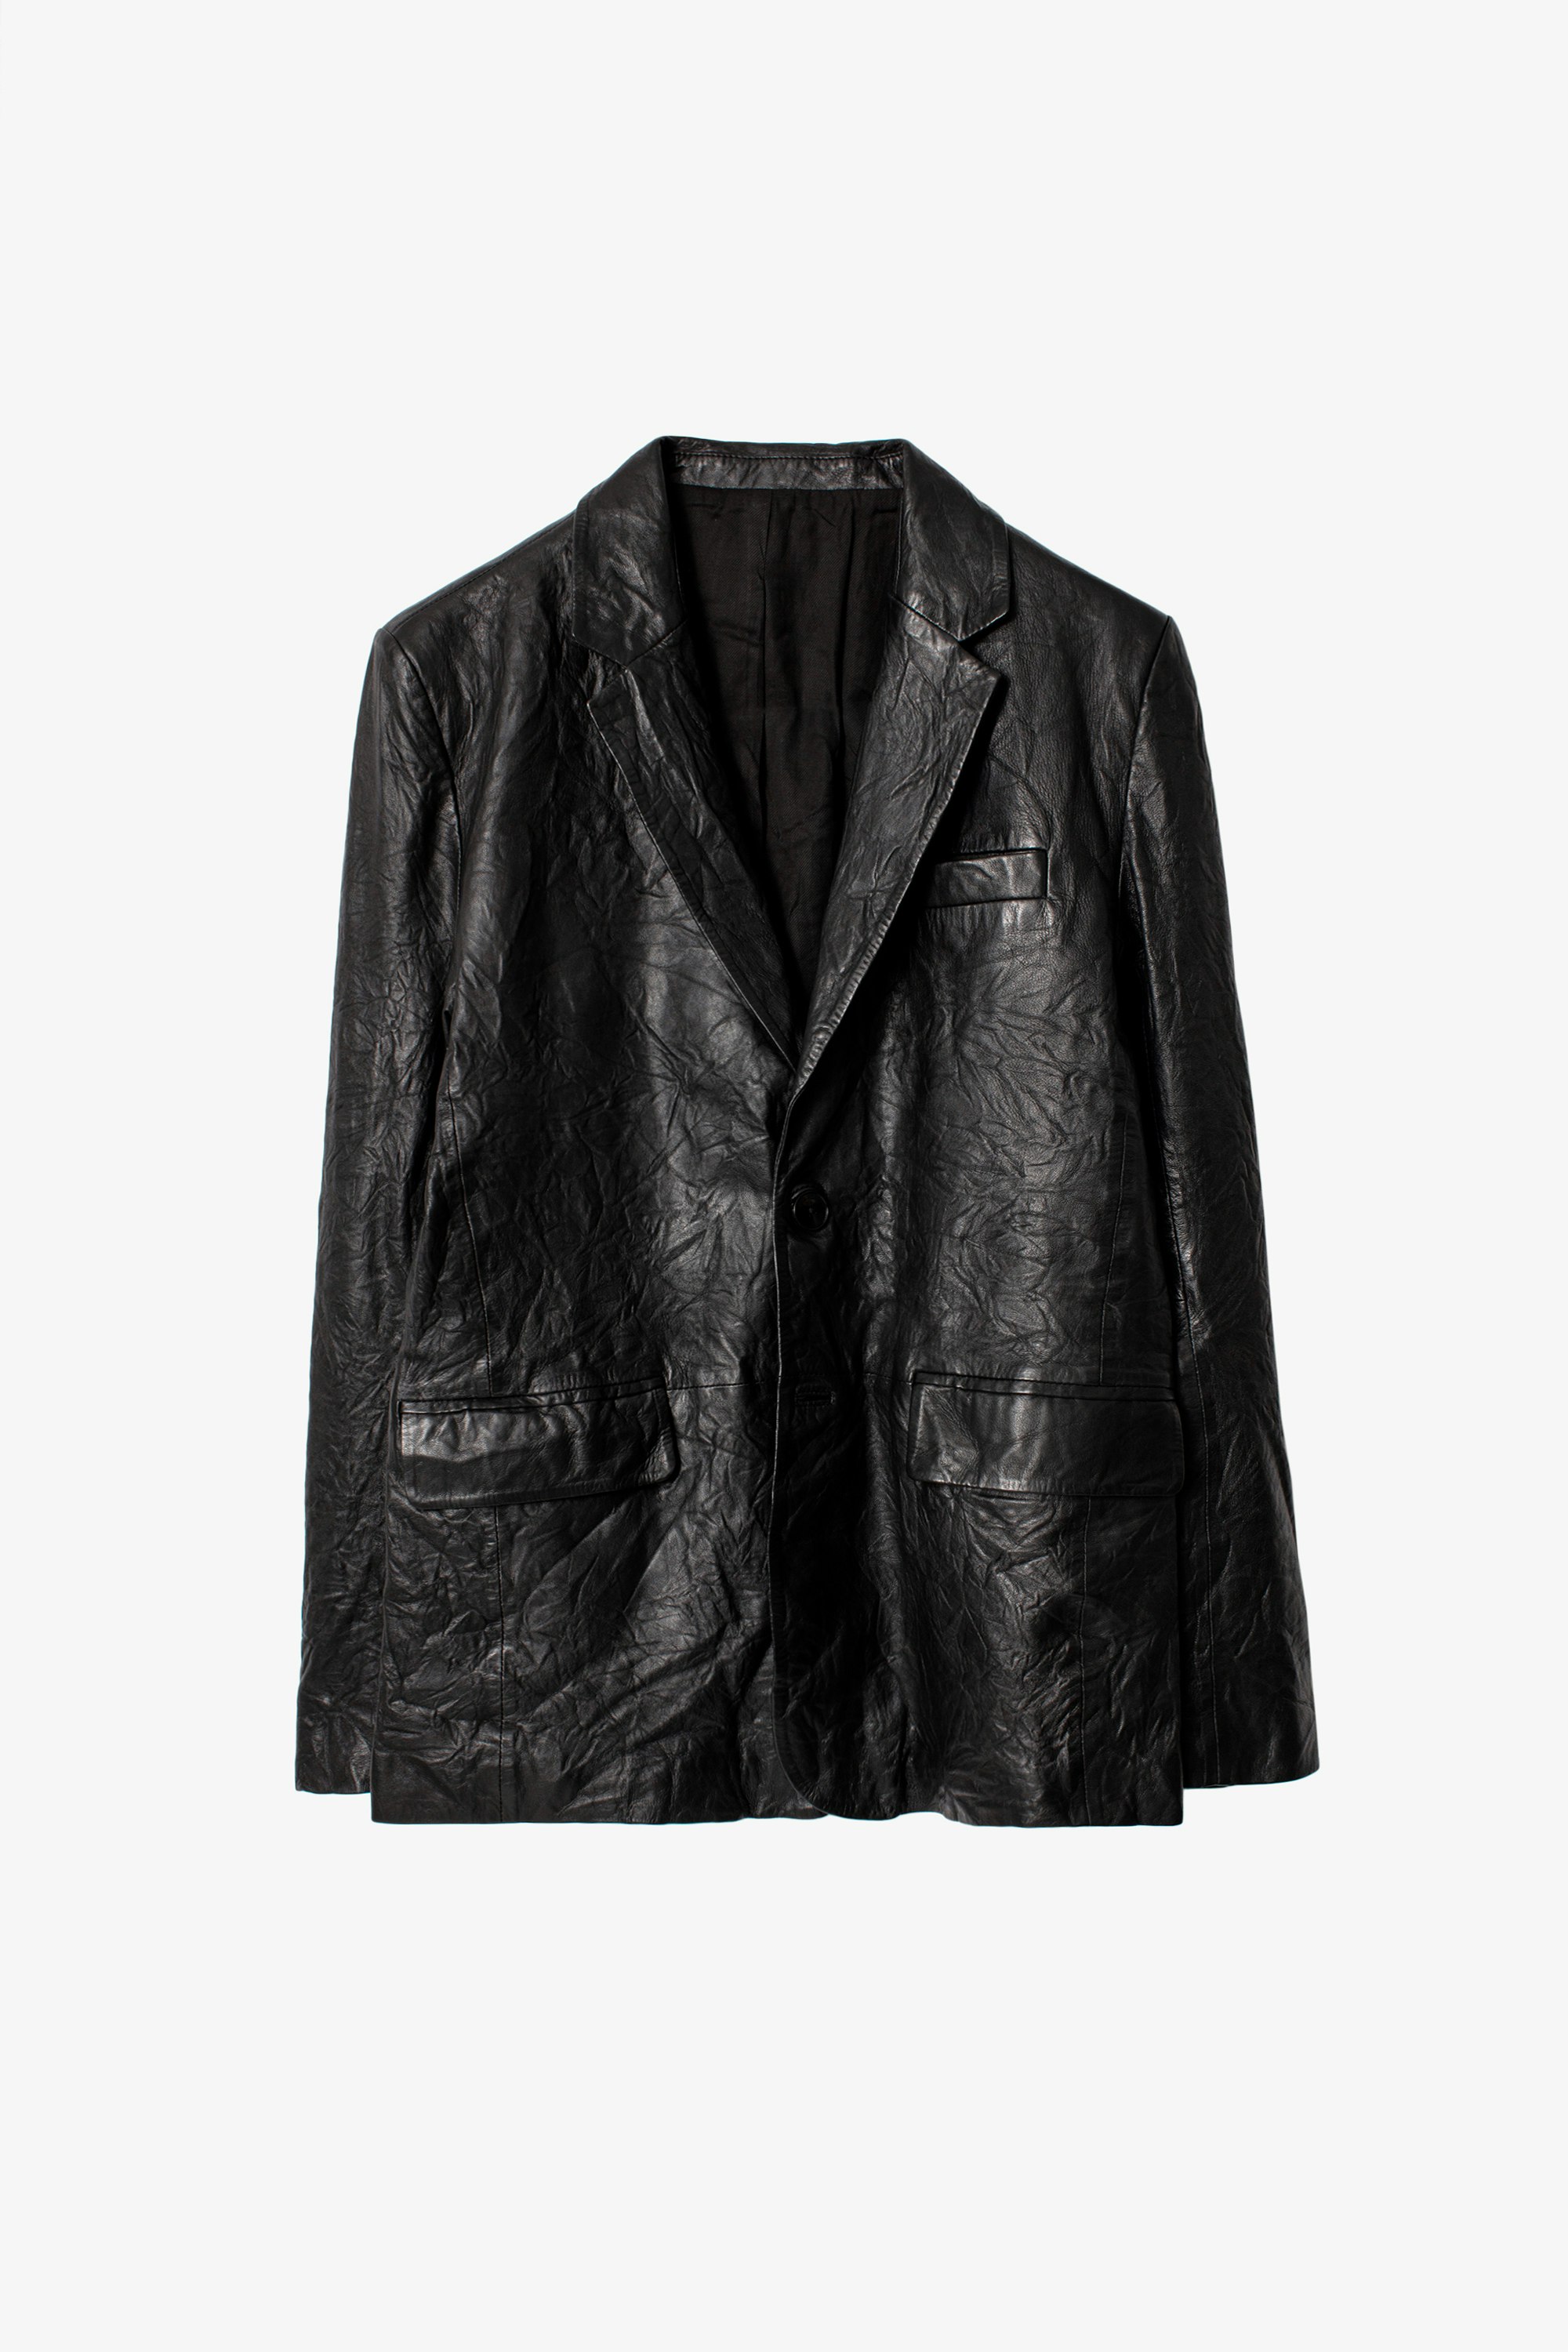 Jacke Valfried Crinkle Leather - Schwarze Anzugsjacke aus Knitterleder.